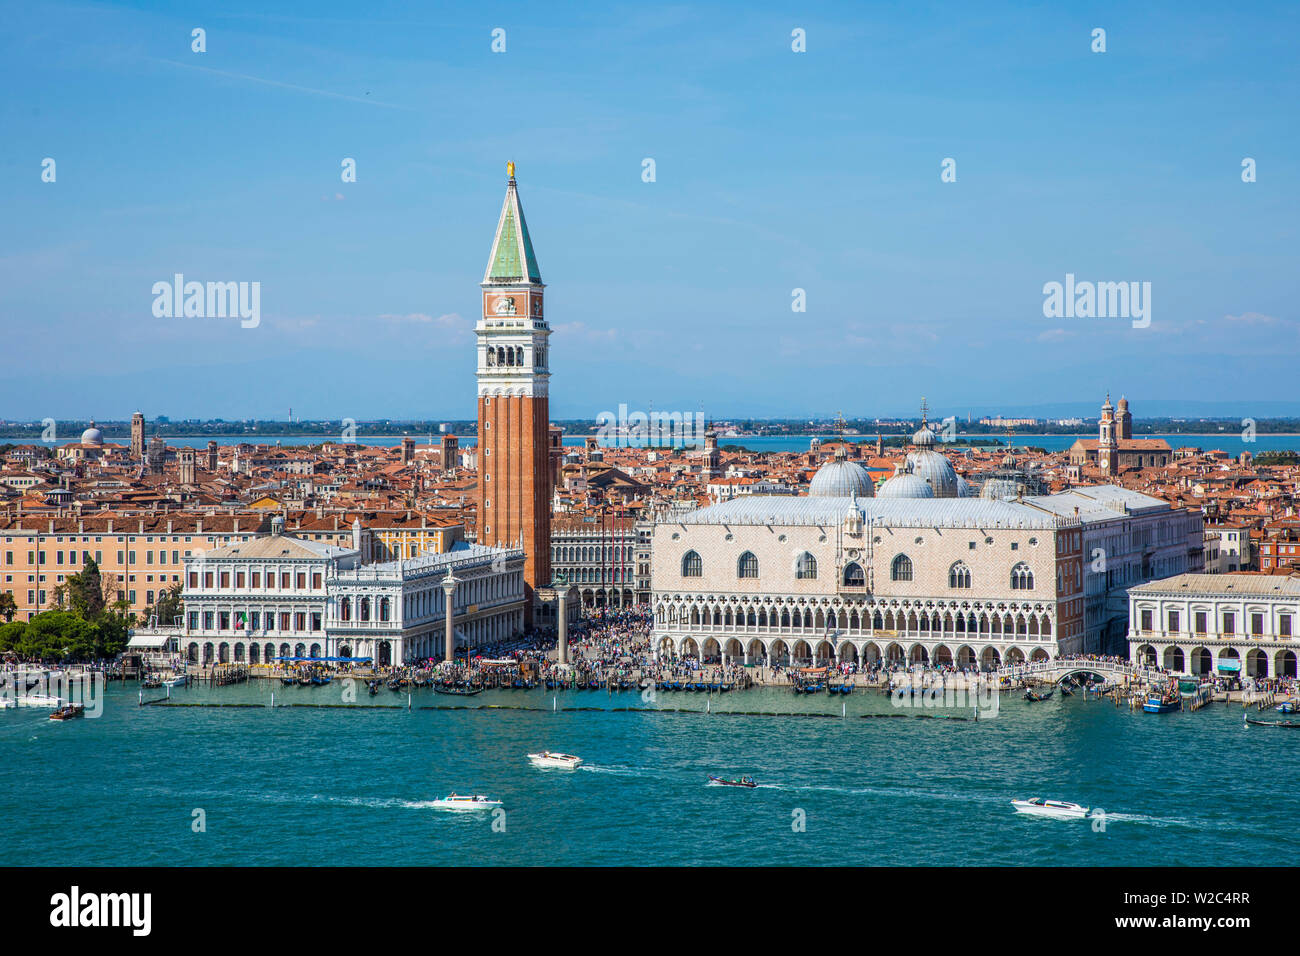 Campanile und Dogenpalast und Markusplatz (Piazza San Marco), Venedig, Italien Stockfoto